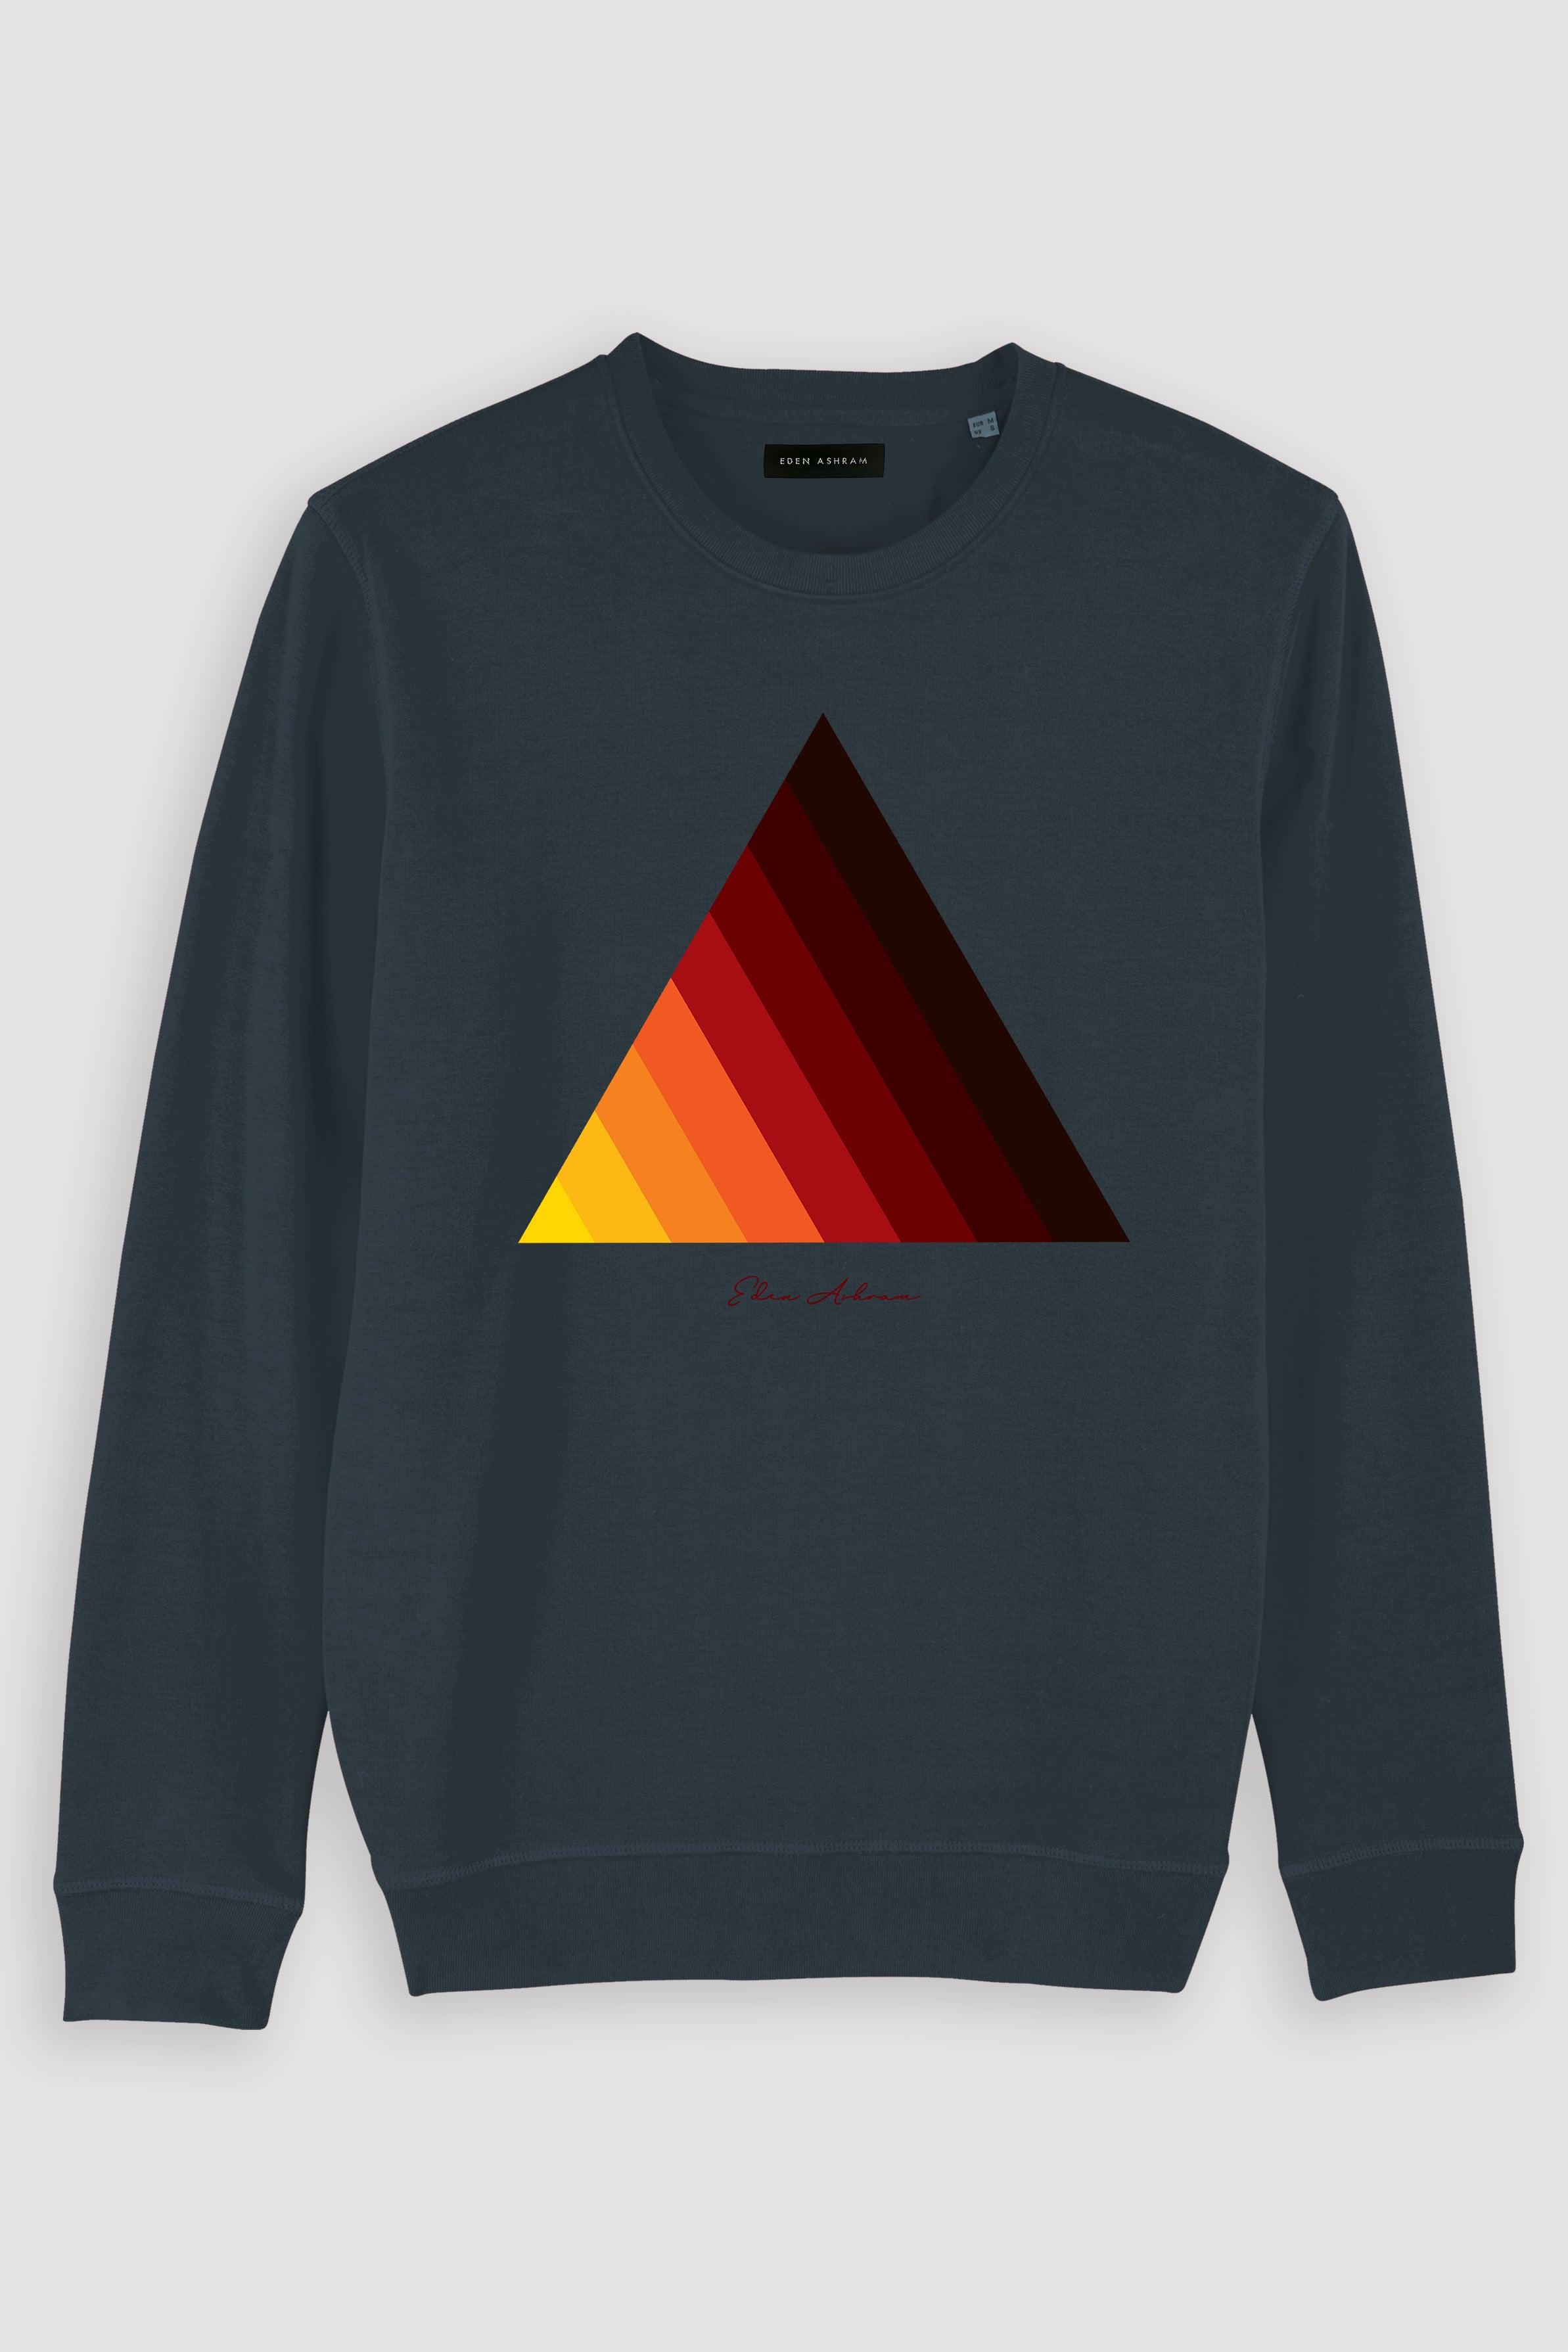 EDEN ASHRAM Retro Pyramid Premium Crew Neck Sweatshirt India Ink Grey